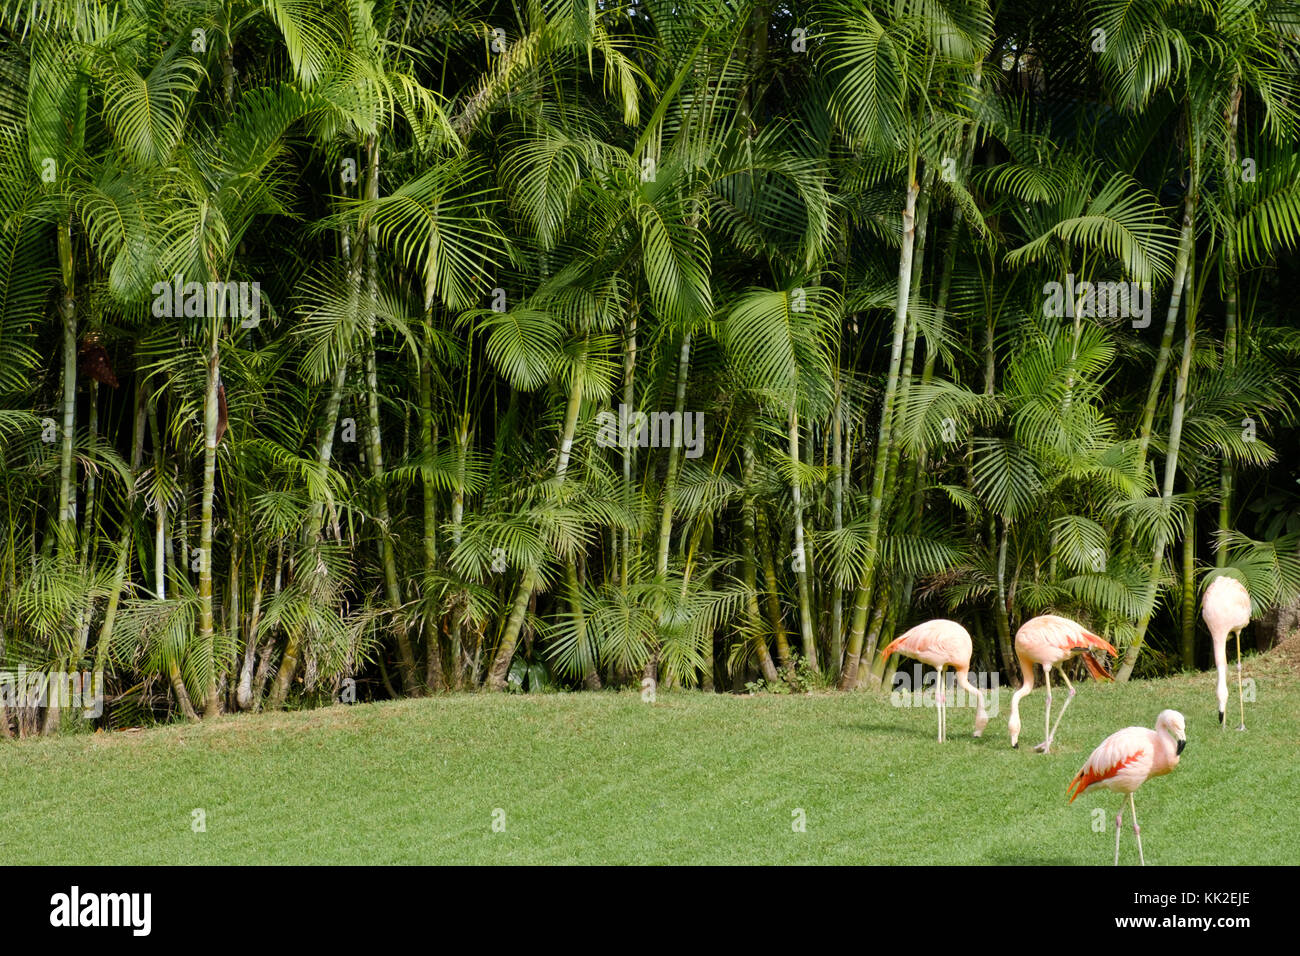 Gruppe von Flamingos auf Wiese mit Palm Tree Hintergrund - Stockfoto